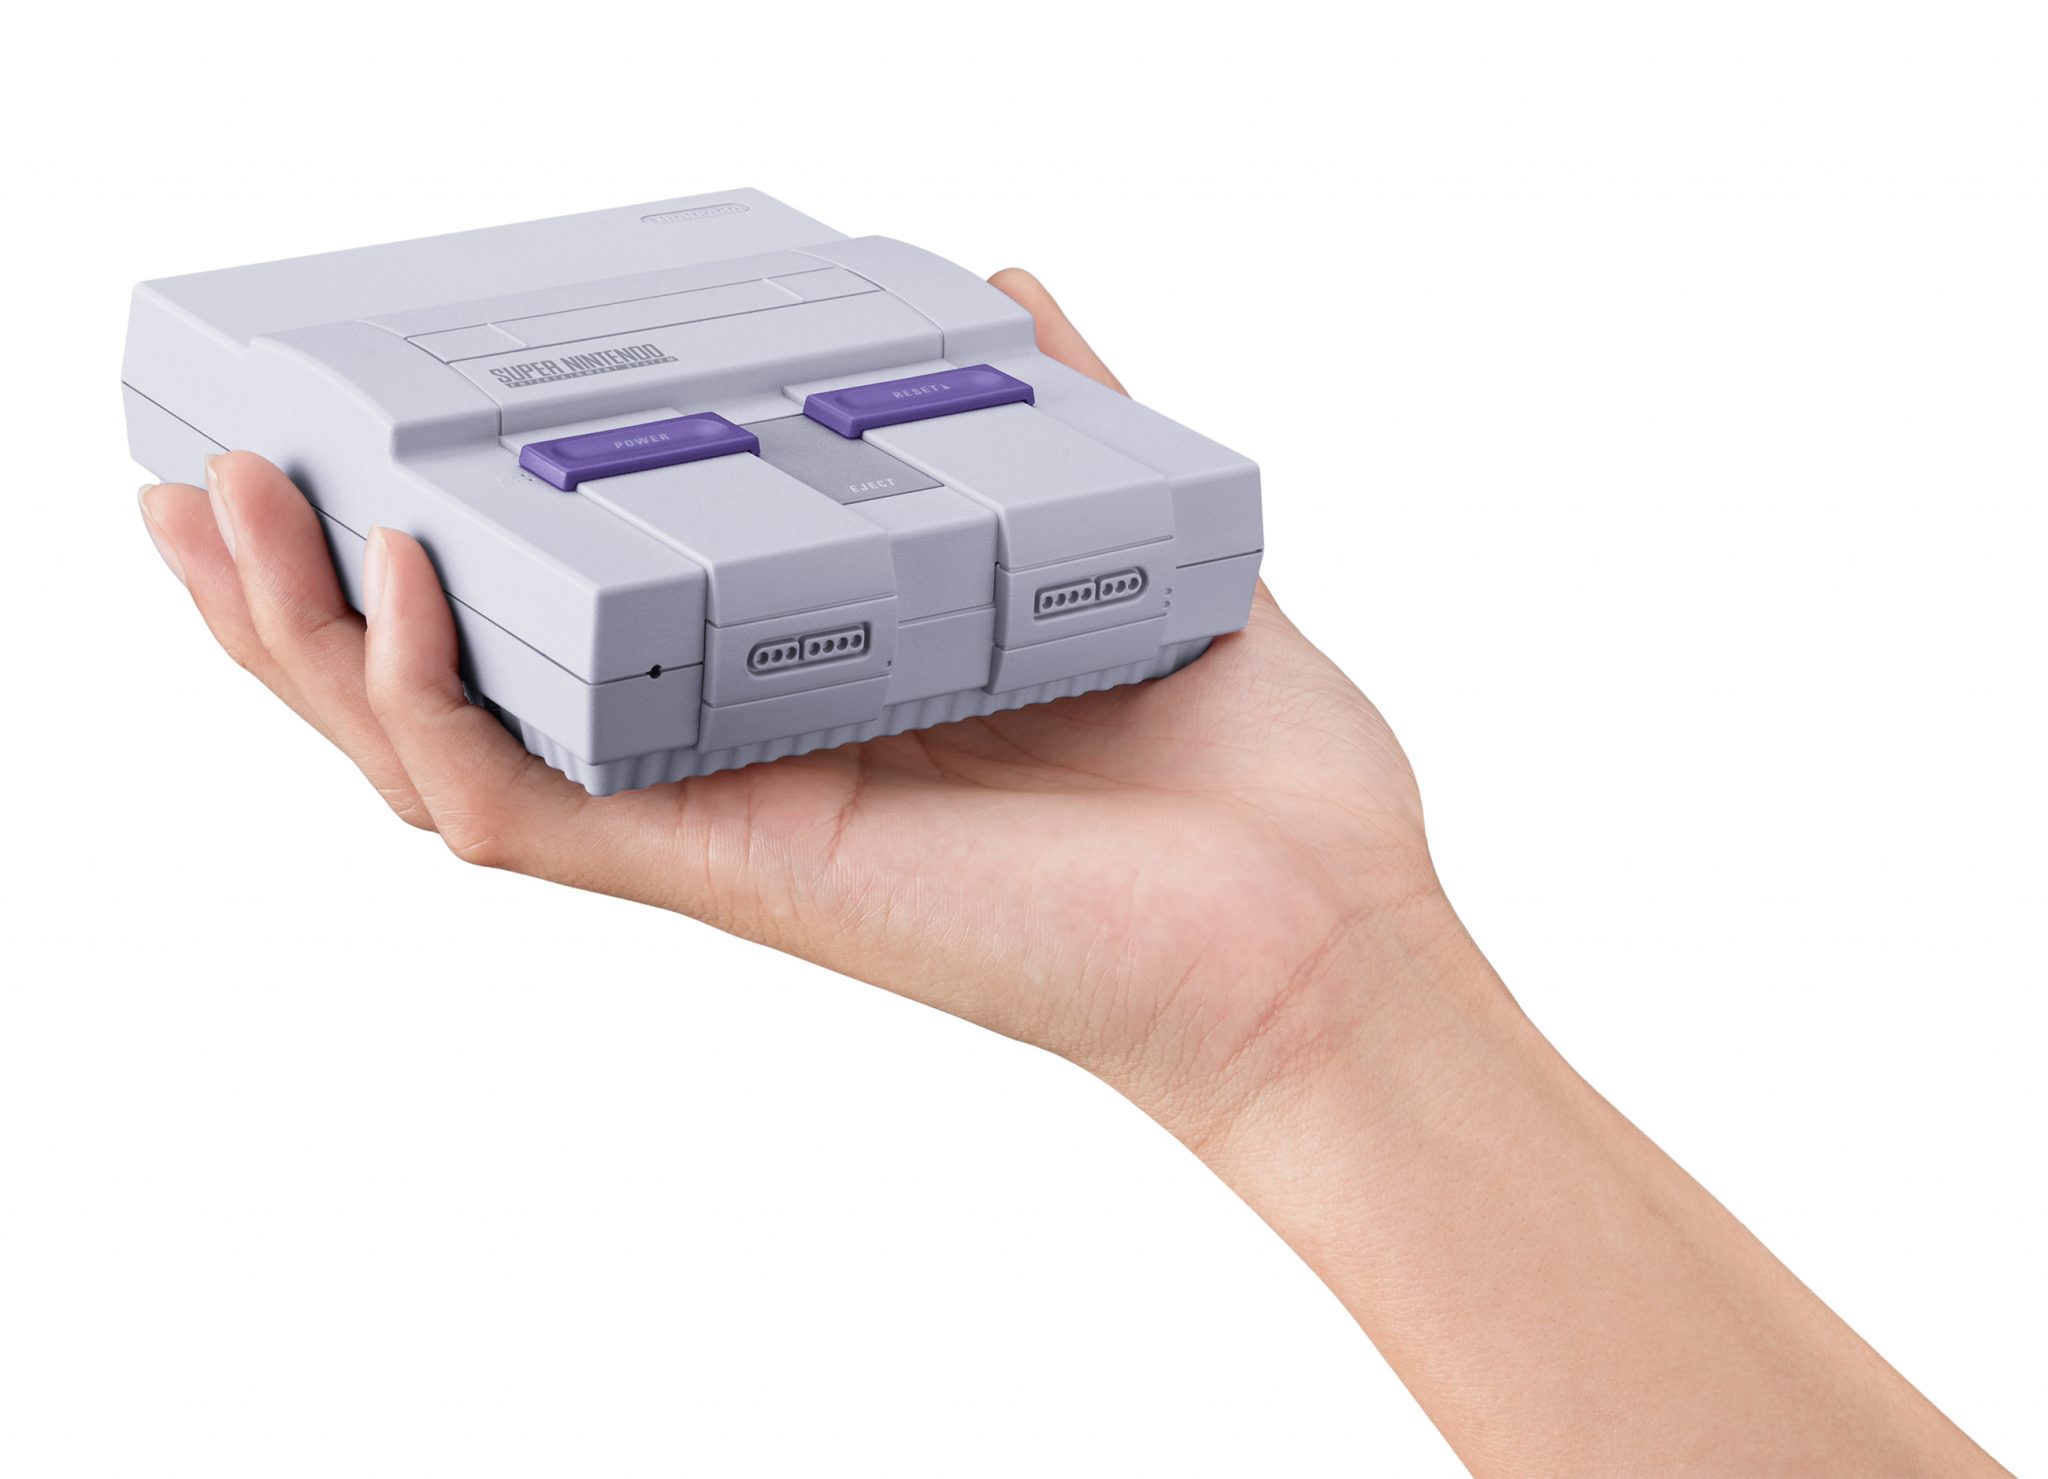 Nintendo dice que su NES Classic Edition estaba planeado para 2017